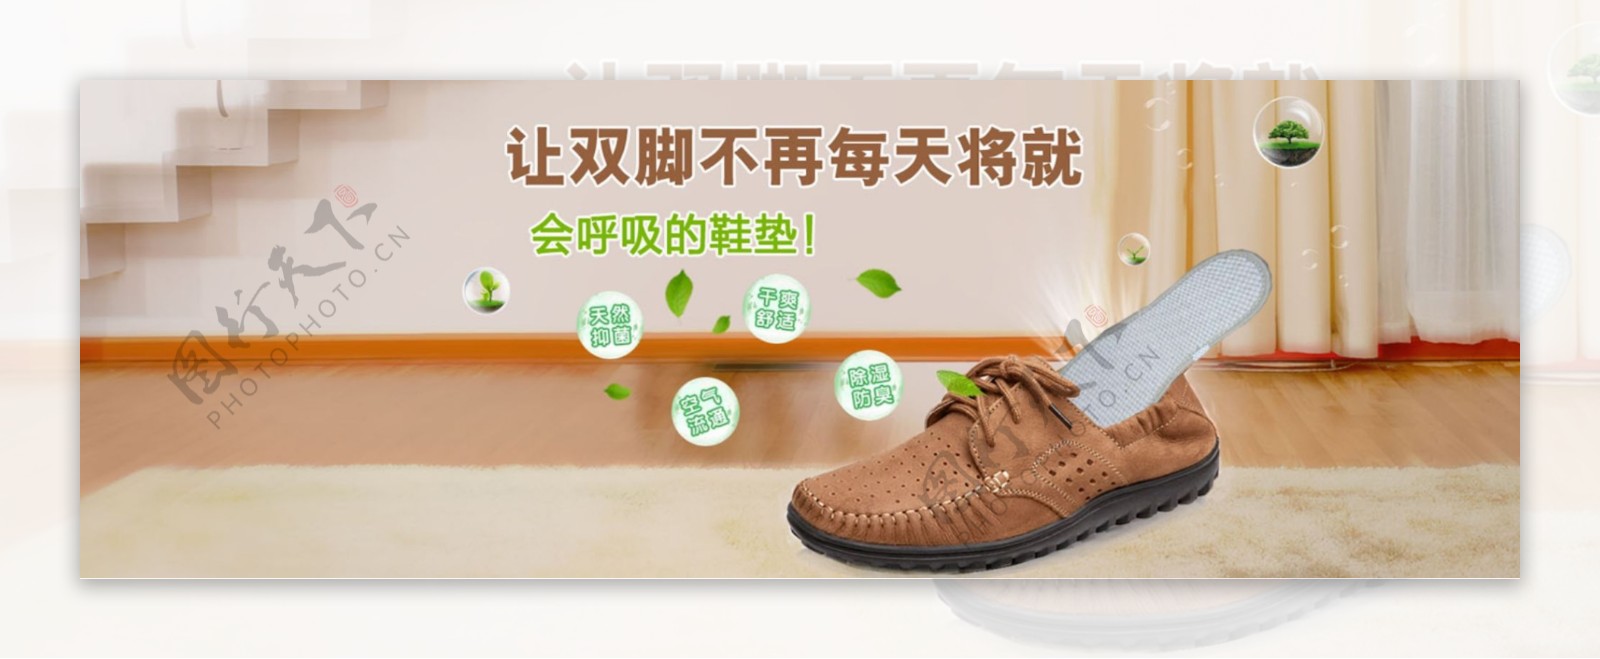 淘宝阿里巴巴首页广告图鞋子鞋垫